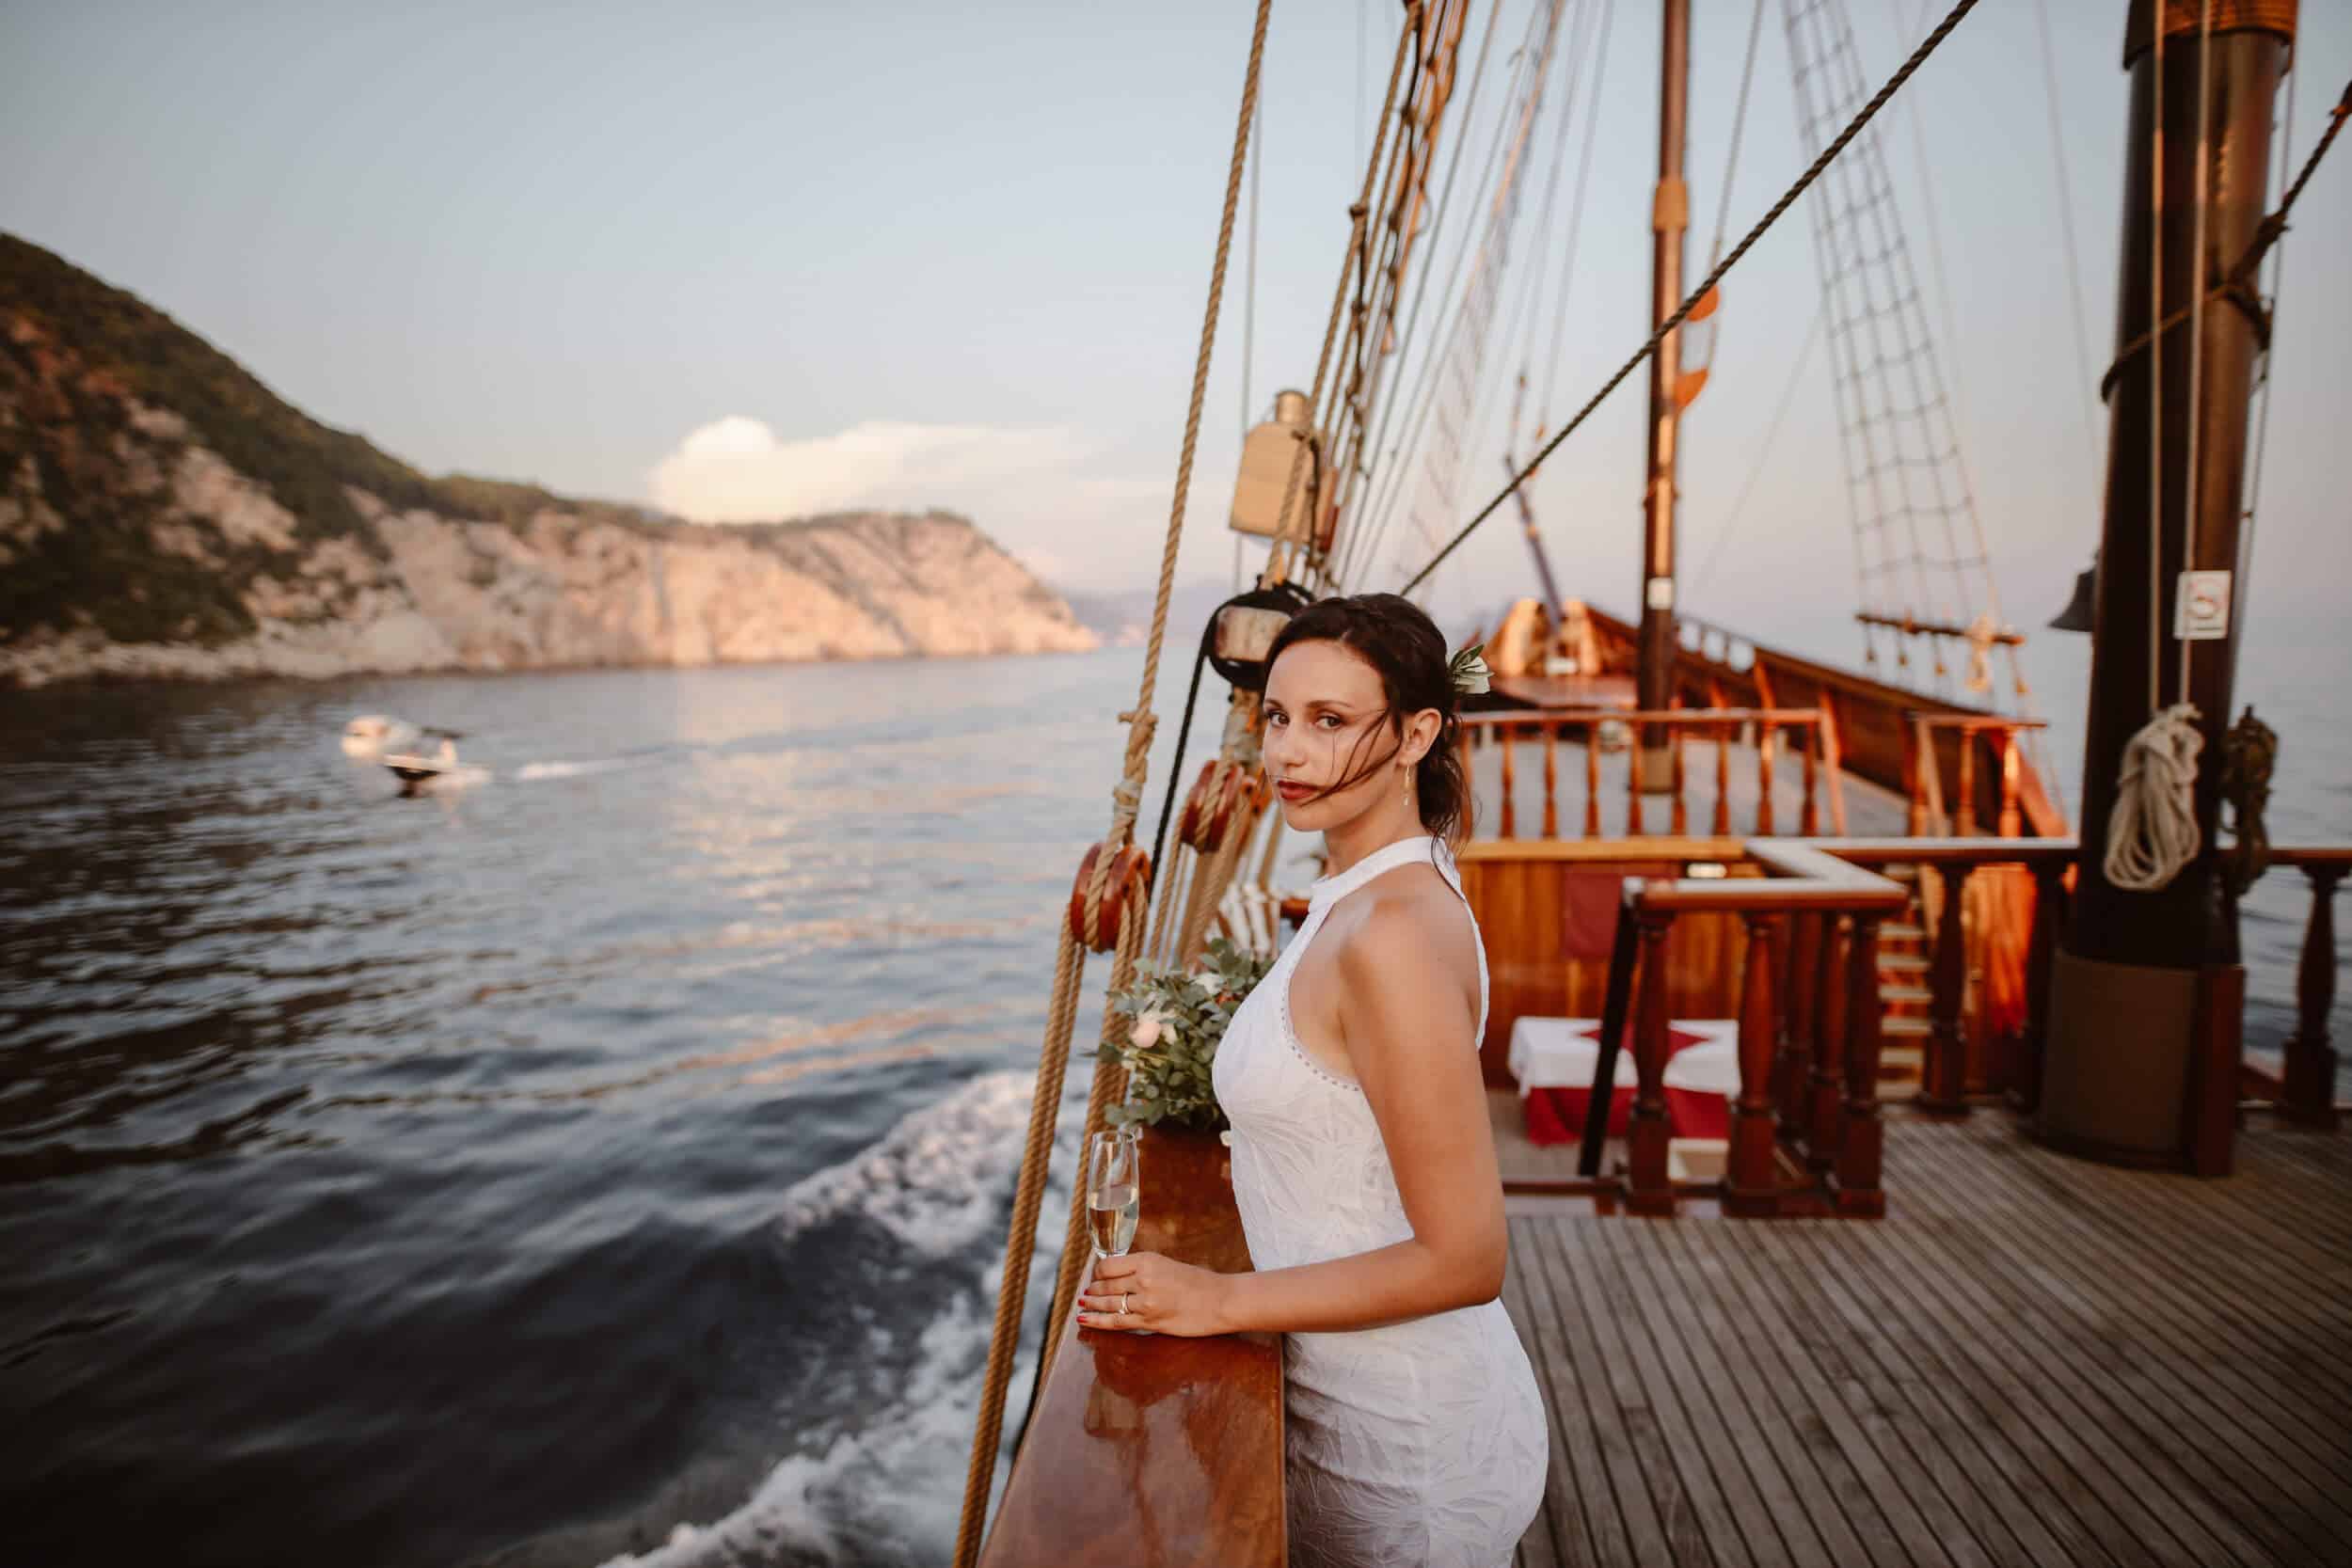 Croatia boat wedding in 2022: romance on the beautiful Adriatic